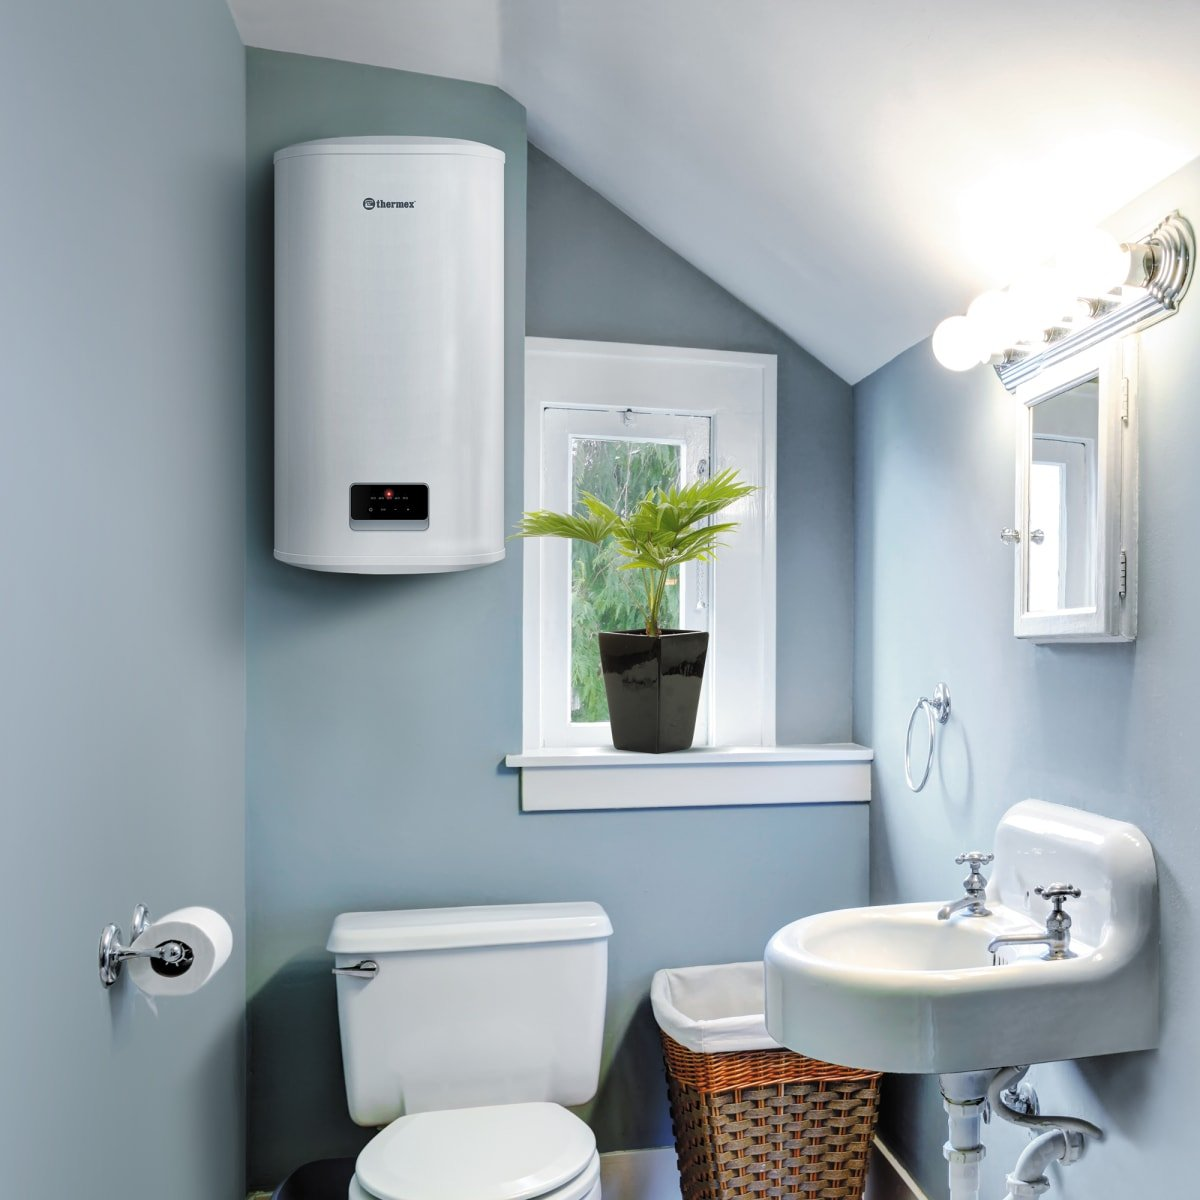 При обновлении или установке системы горячего водоснабжения в доме или квартире вы сталкиваетесь с выбором между различными типами водонагревателей.